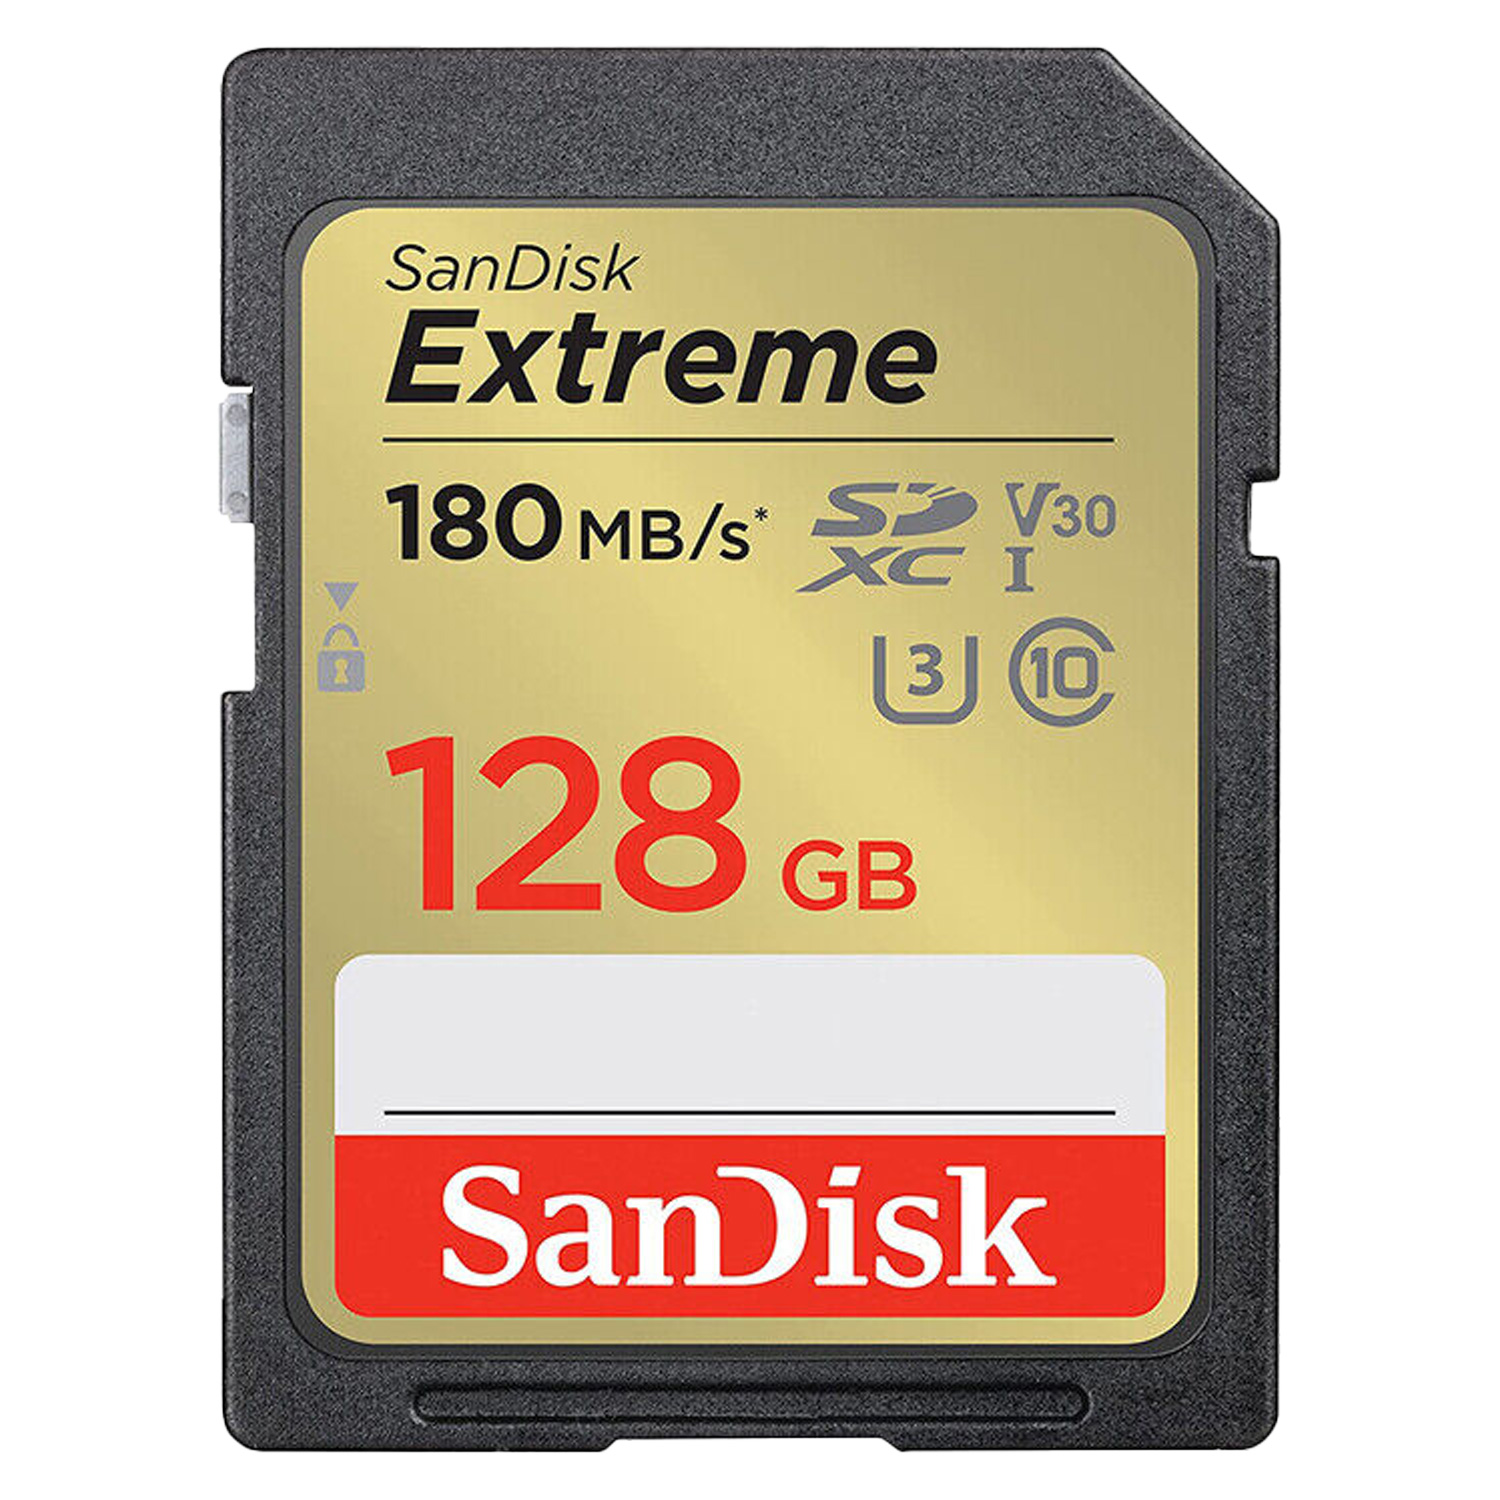 Cartão de Memória Sandisk Extreme 128GB / U3 / 180MBs - (SDSDXVA-128G-GNCIN)
